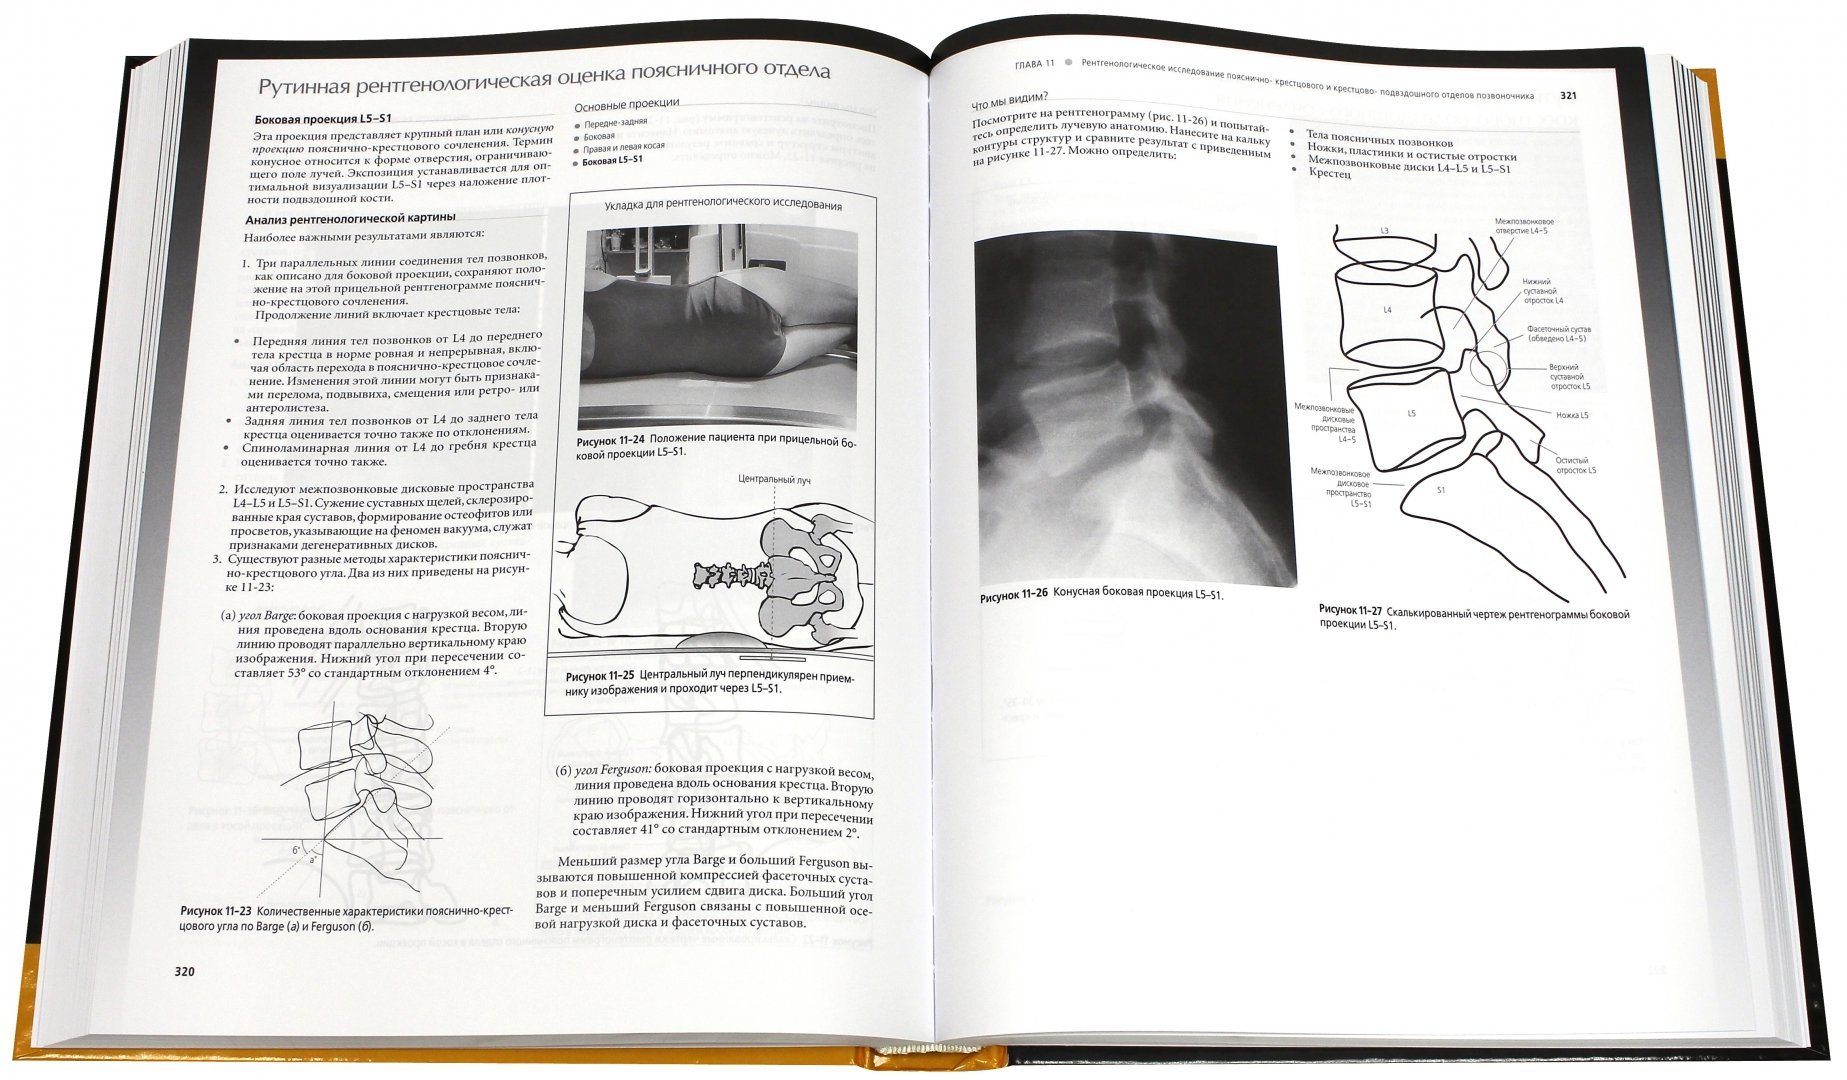 Иллюстрация 1 из 5 для Лучевая диагностика в травматологии и ортопедии. Клиническое руководство - Линн Маккиннис | Лабиринт - книги. Источник: Лабиринт